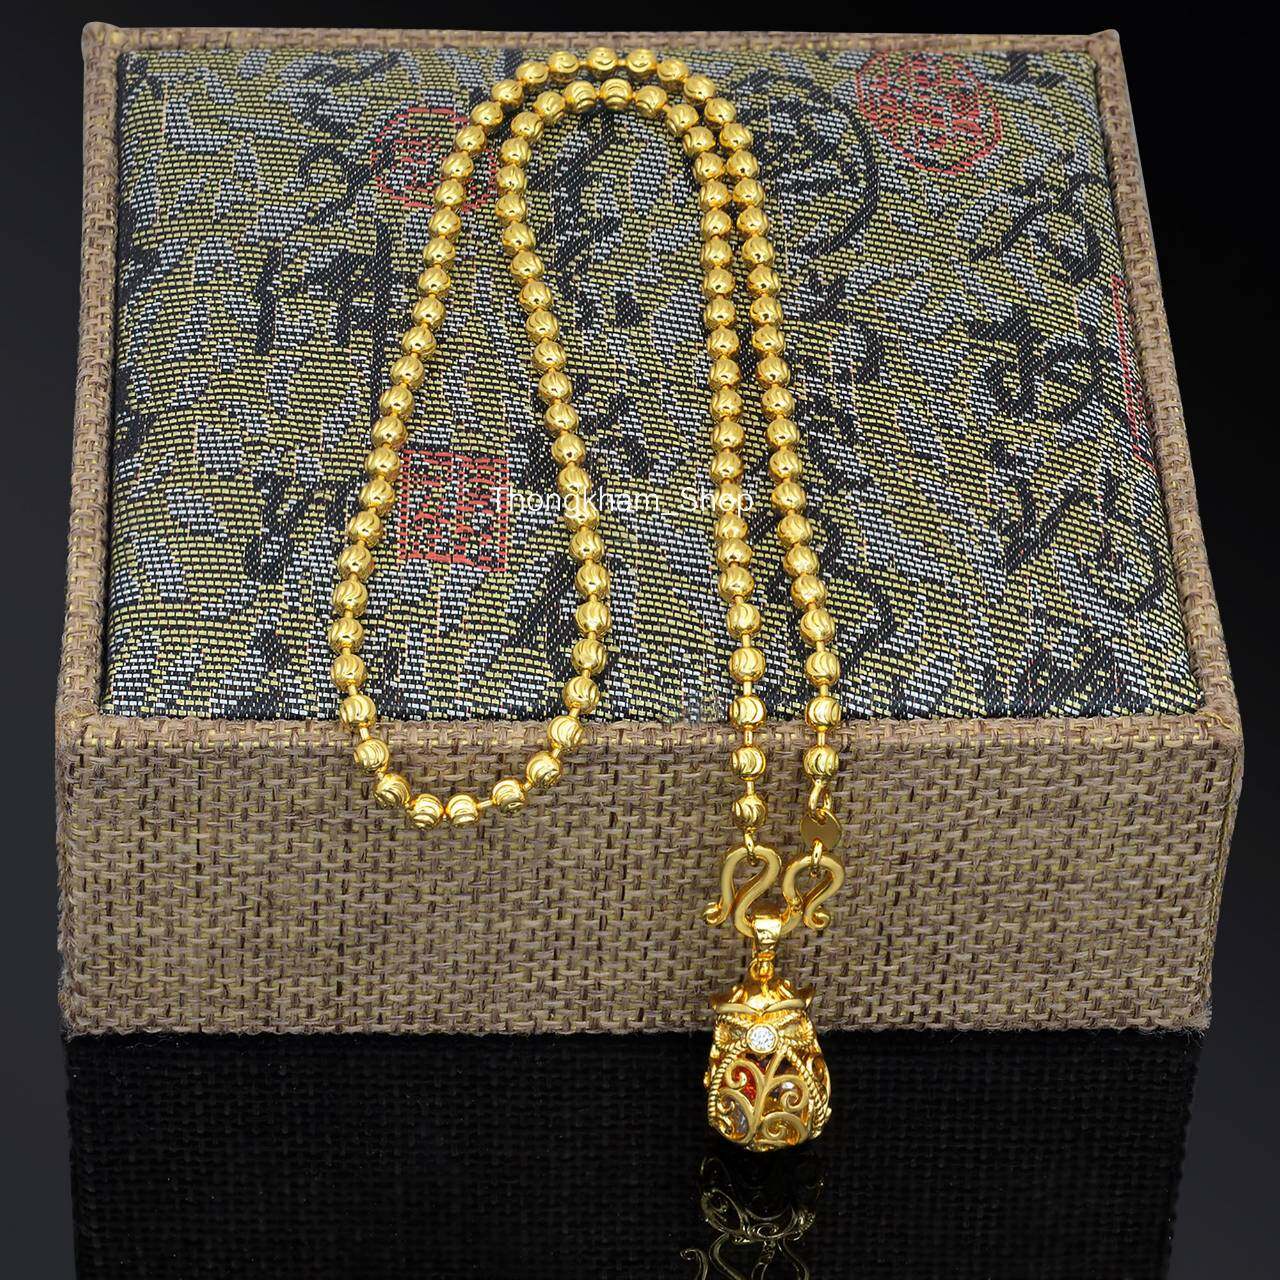 สร้อยคอจี้ถุงทองประคองทรัพย์ จี้ถุงทองนพเก้า ทองสองกษัตริย์ สร้อยคอลายเม็ดมะยม